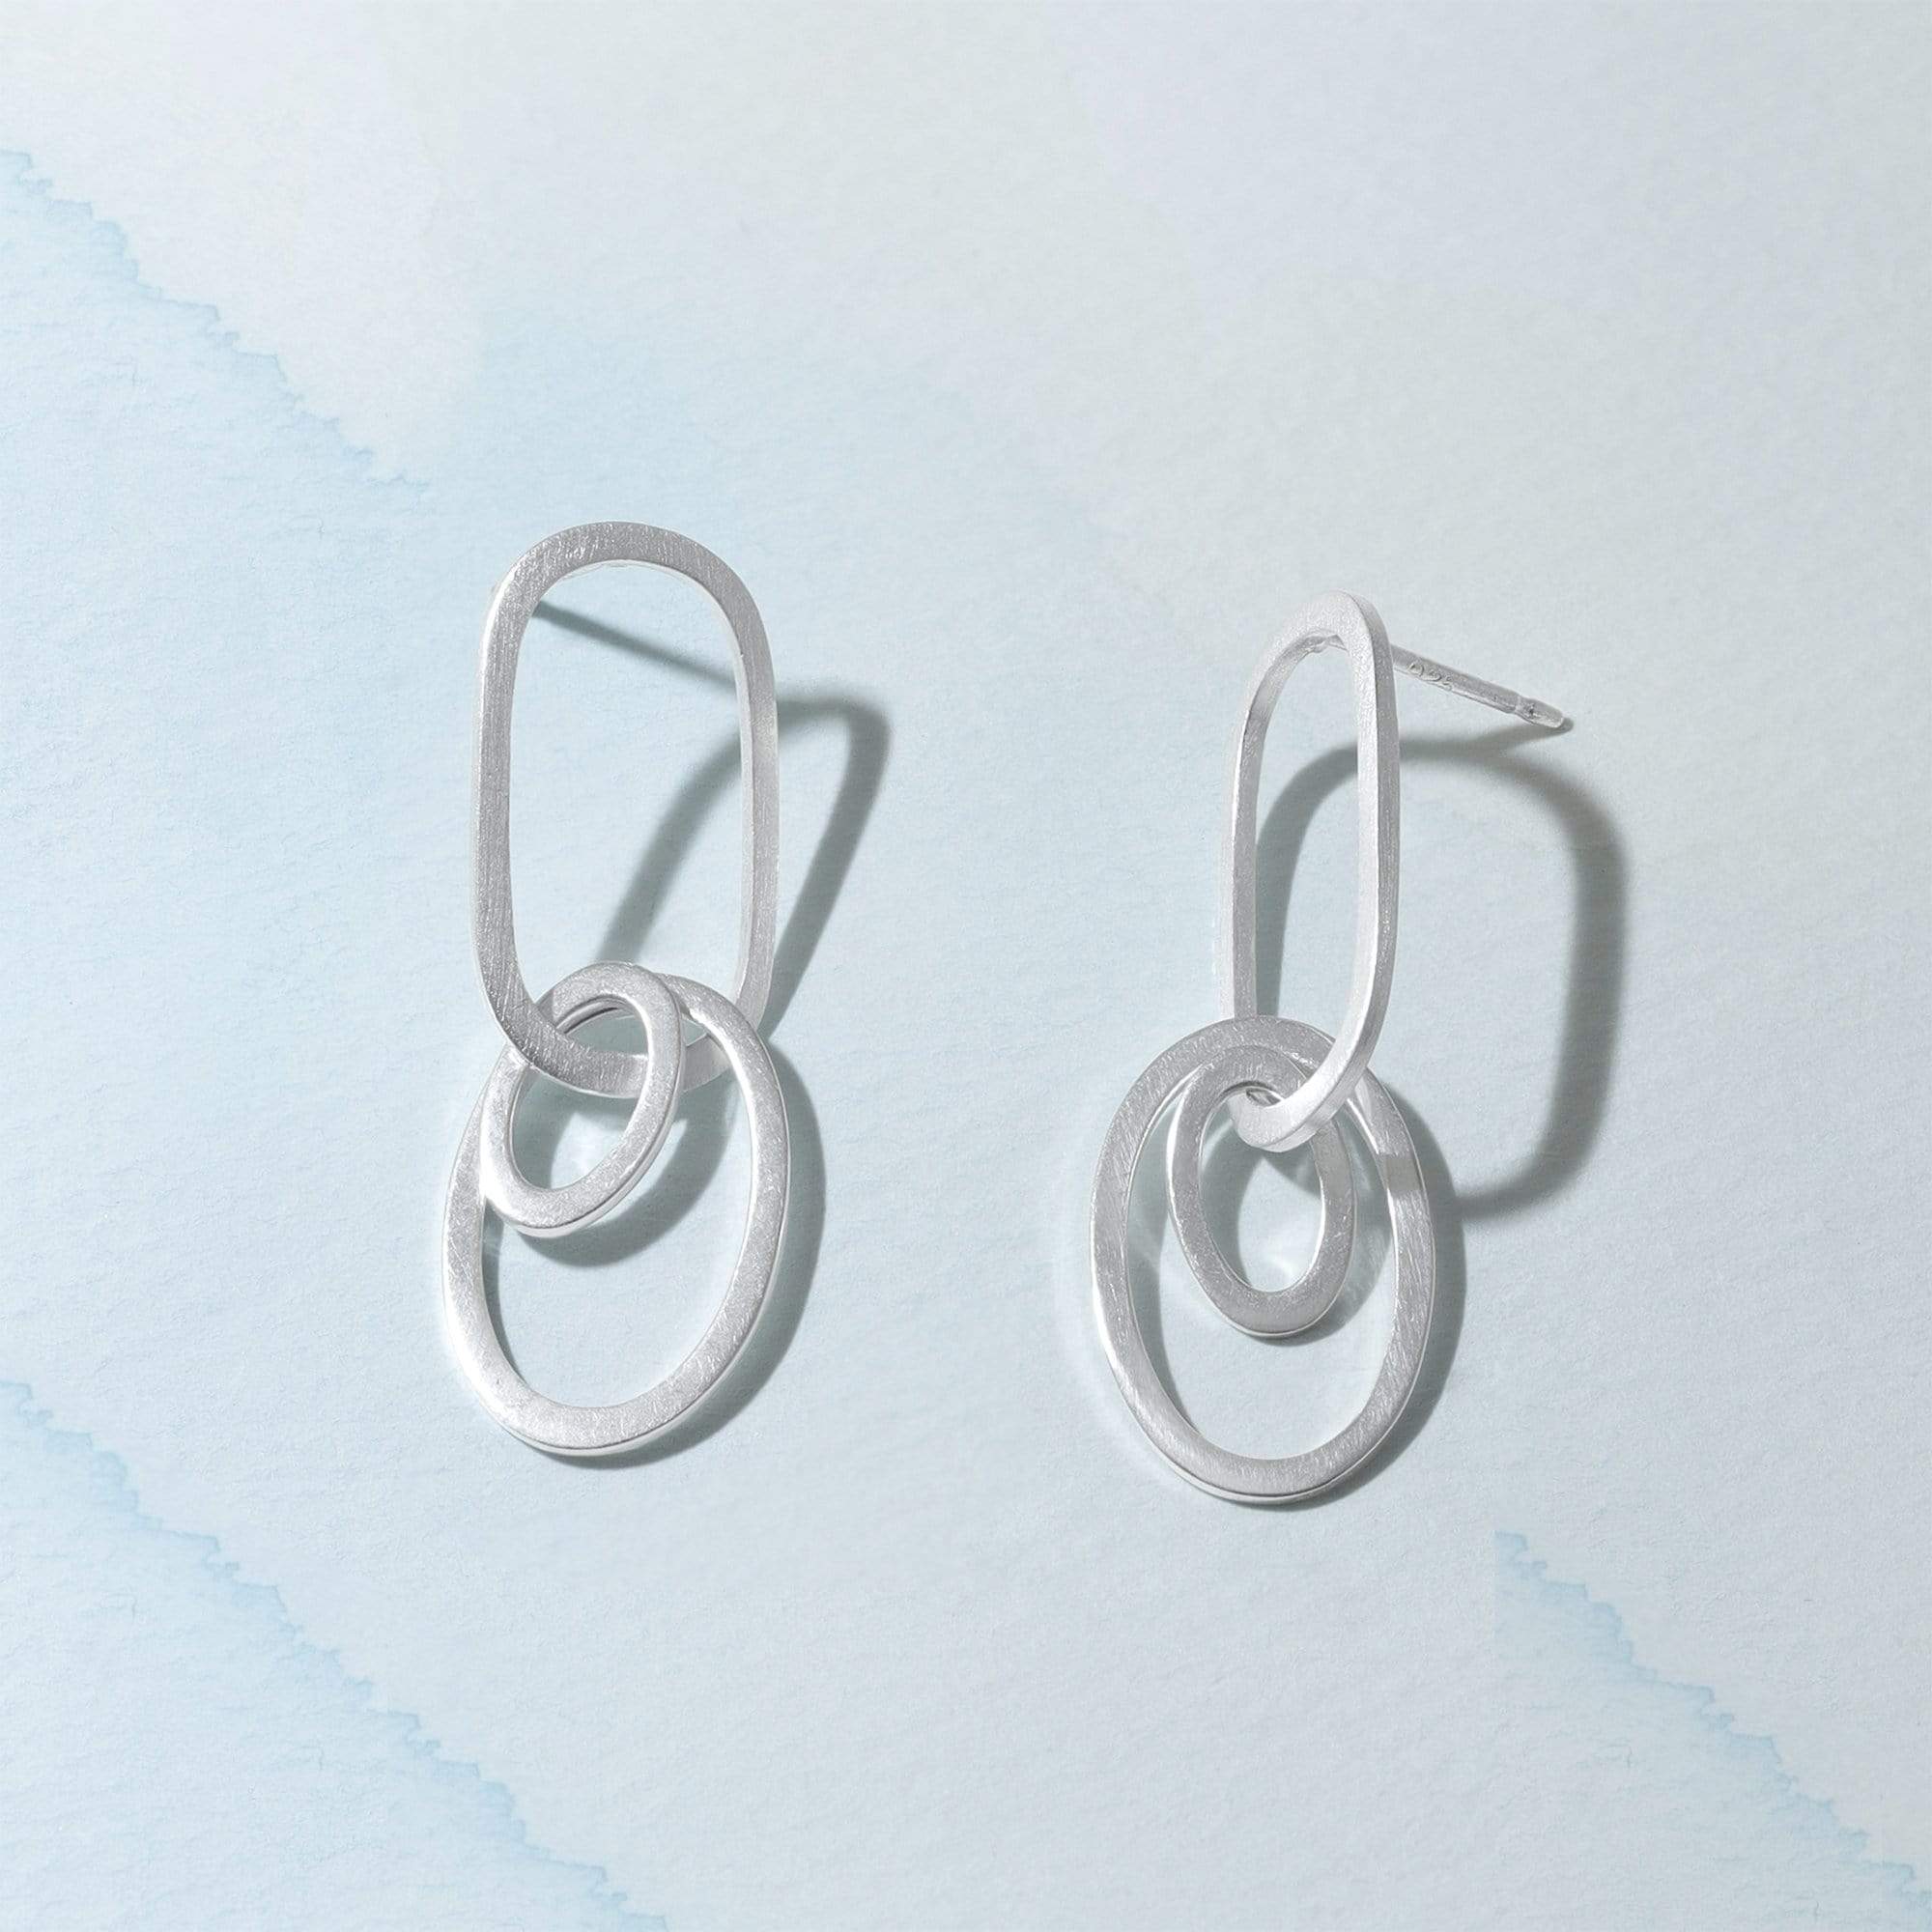 Boma Jewelry Earrings Silver Links Earrings